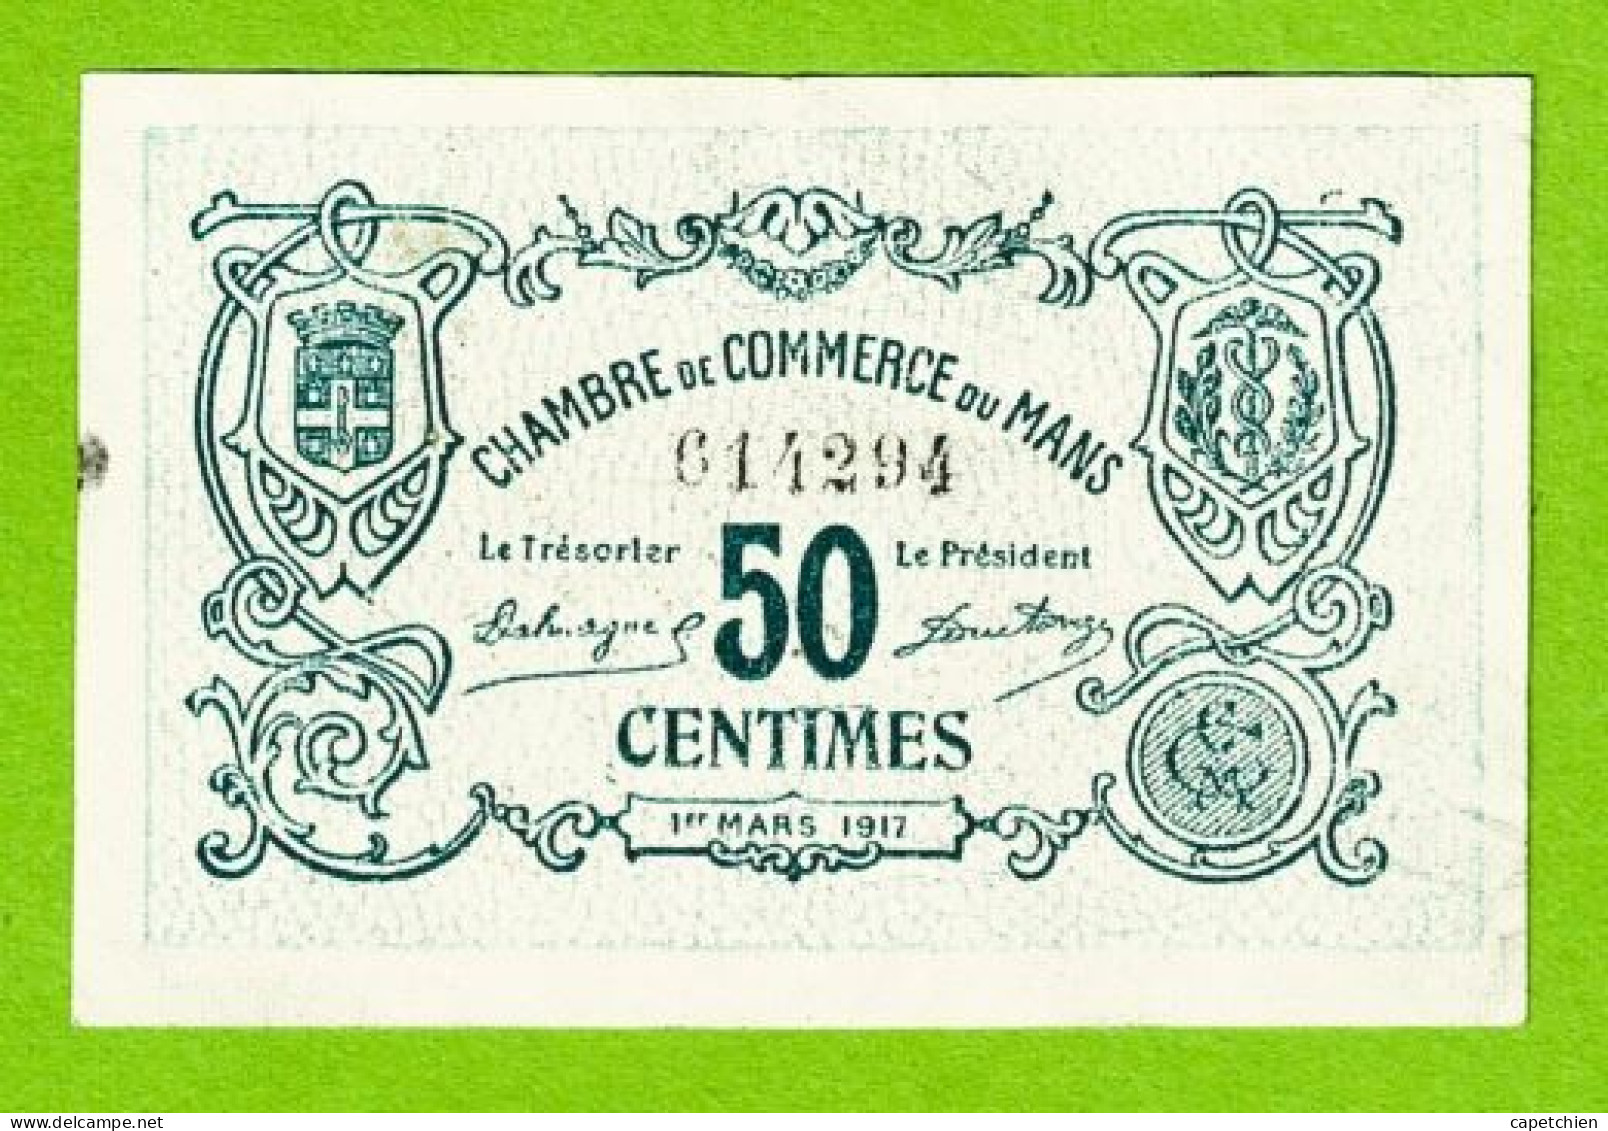 FRANCE / LE MANS / 50 CENTIMES / 1er MARS 1917 / N° 614294 - 2eme SERIE - Chamber Of Commerce